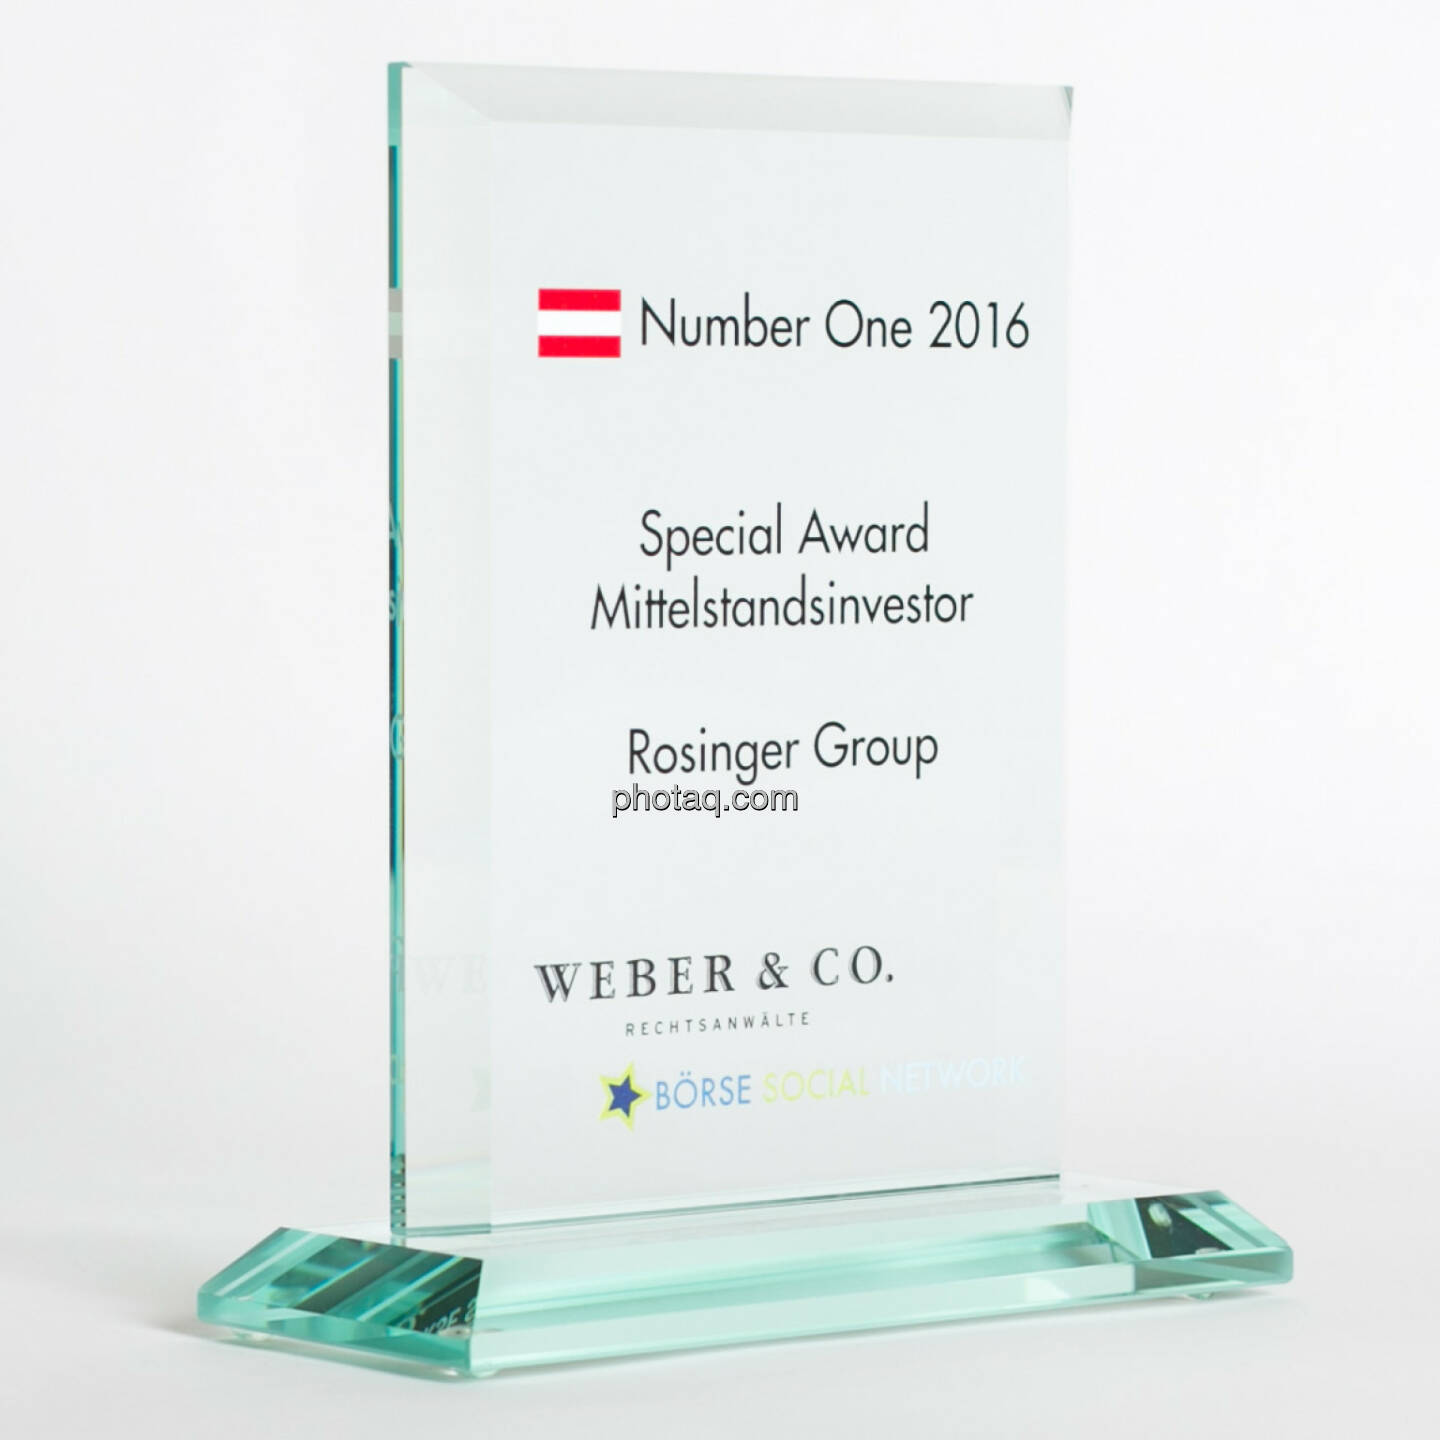 Number One Awards 2016 - Special Award Mittelstandsinvestor Rosinger Group